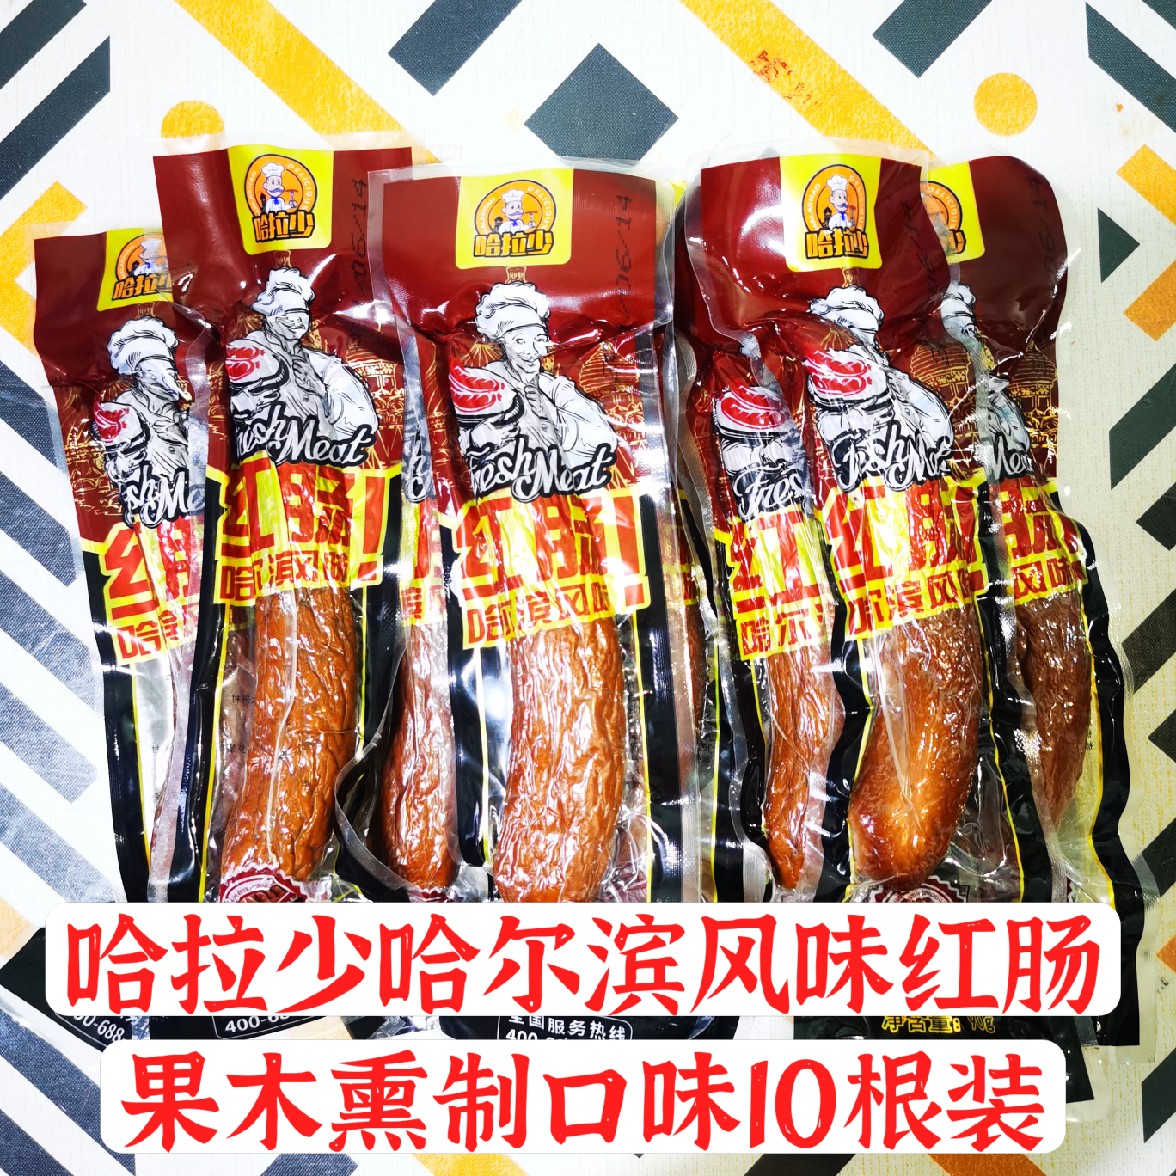 正宗哈拉少哈尔滨风味红肠香肠肉肠熟食独立包装 零食10只装 正品